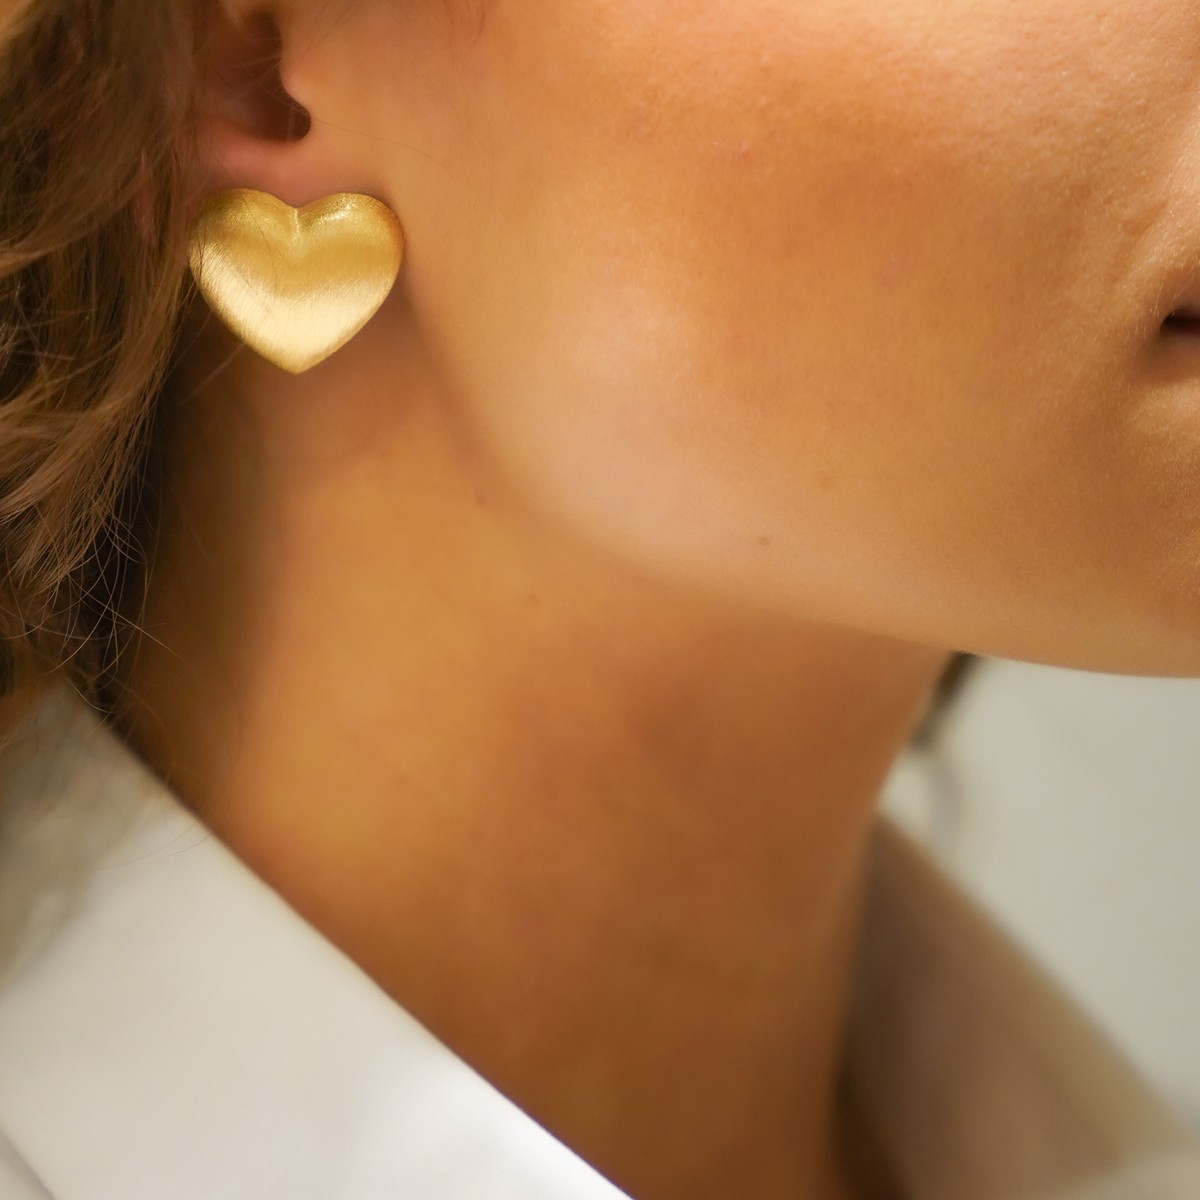 Stud Earrings Brushed Heart - Ohrringe - 18k vergoldet